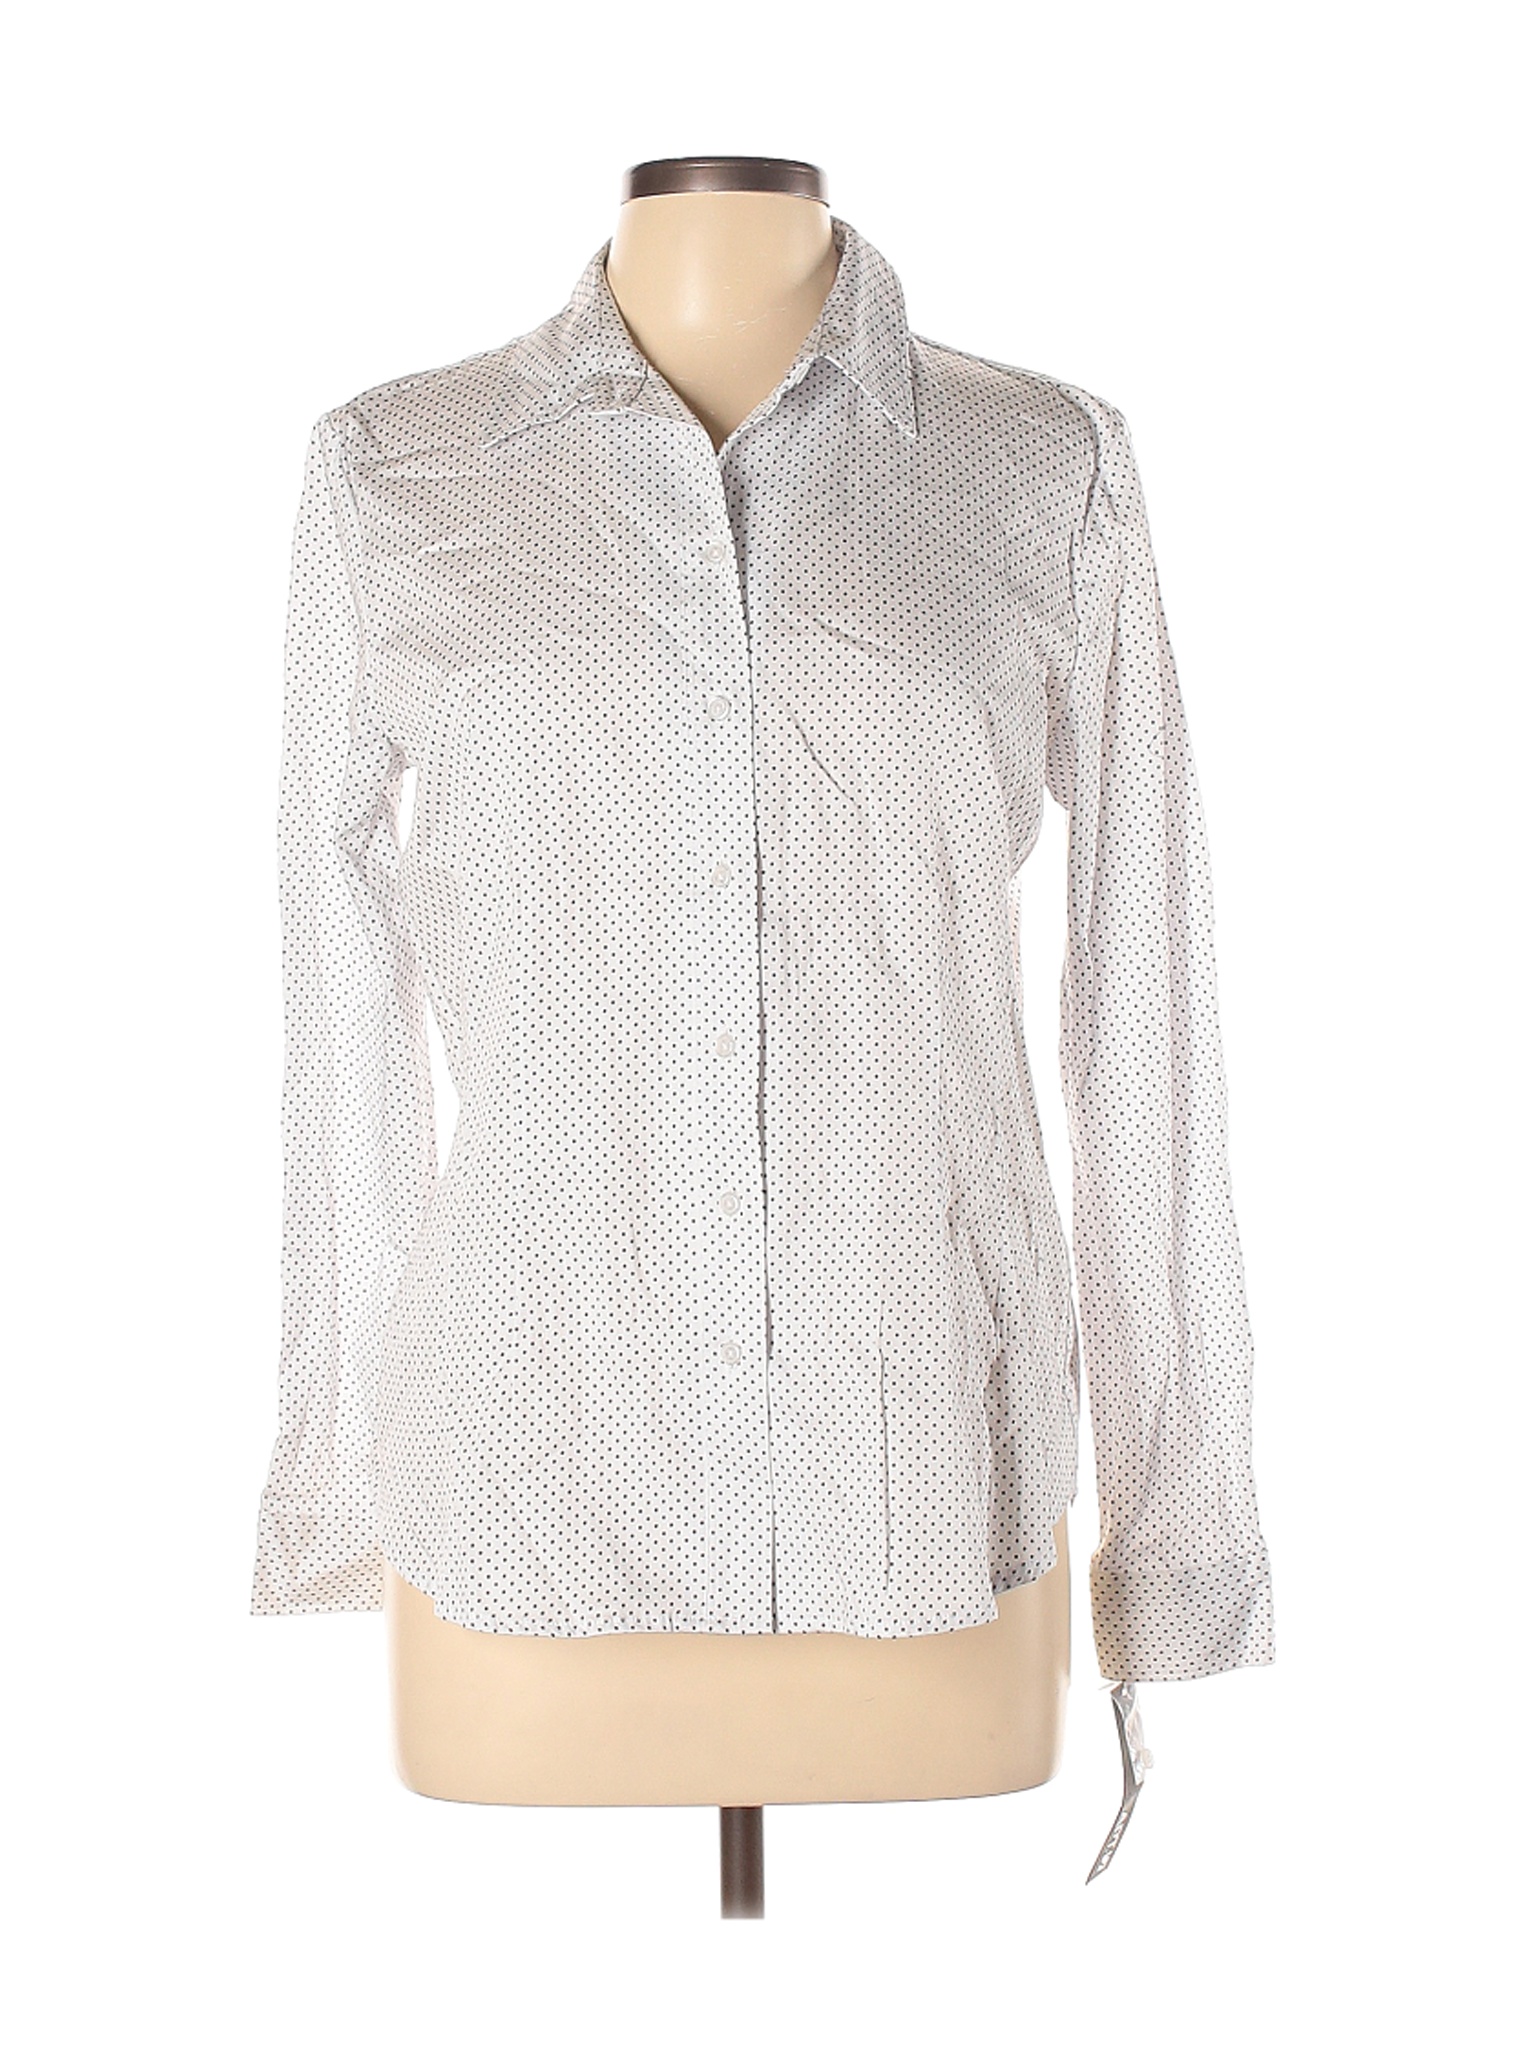 Apt. 9 Women White Long Sleeve Button-Down Shirt L | eBay